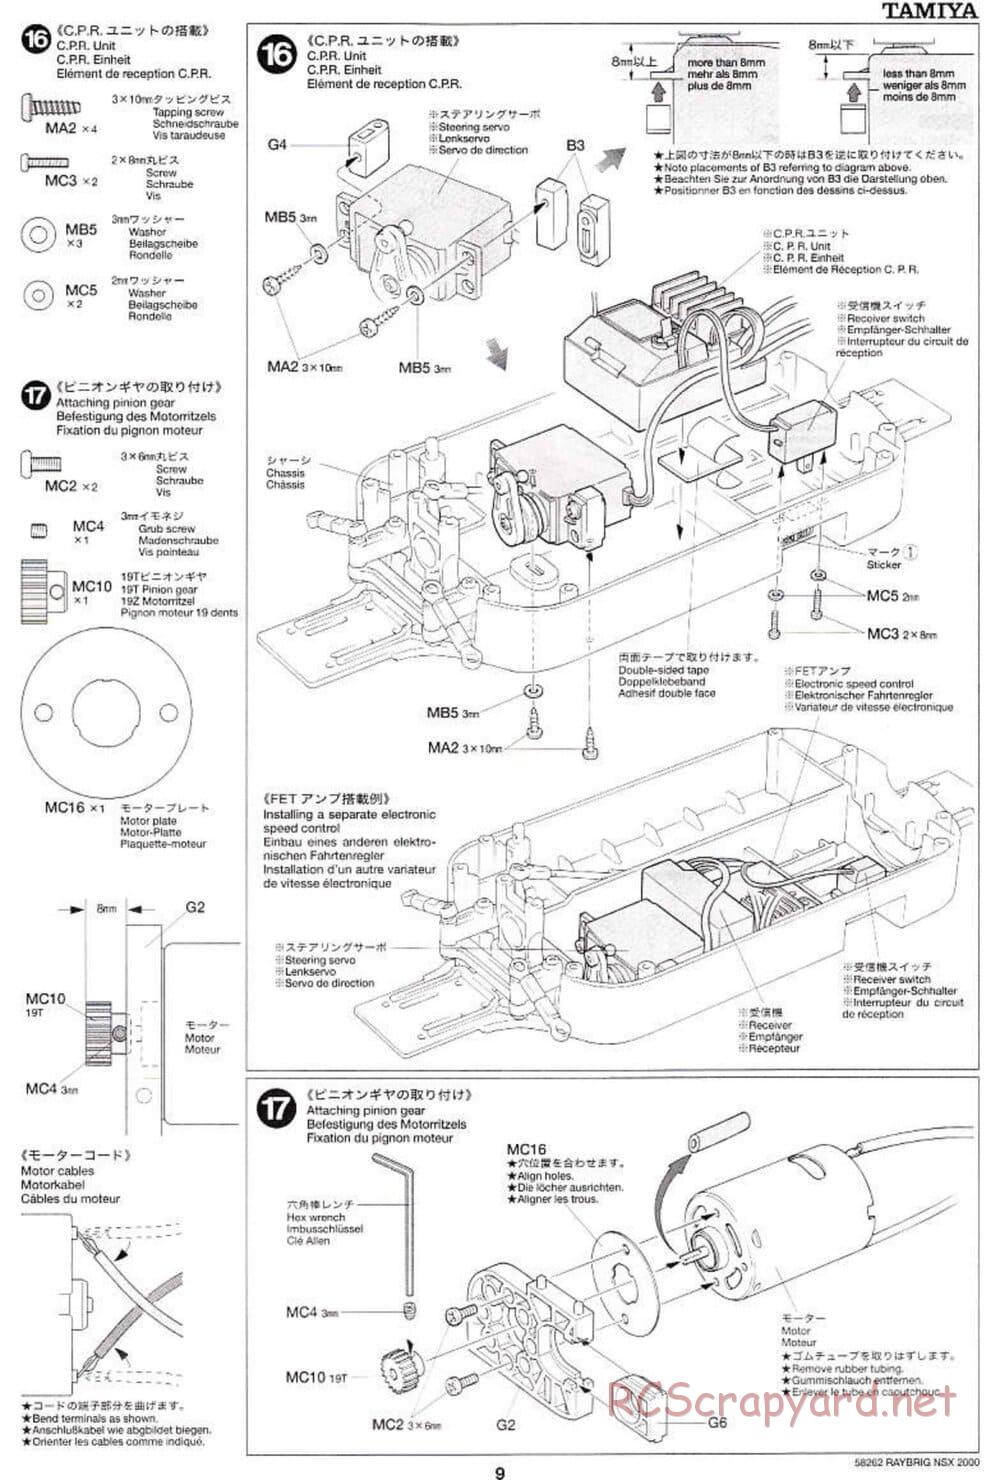 Tamiya - Raybrig NSX 2000 - TB-01 Chassis - Manual - Page 9